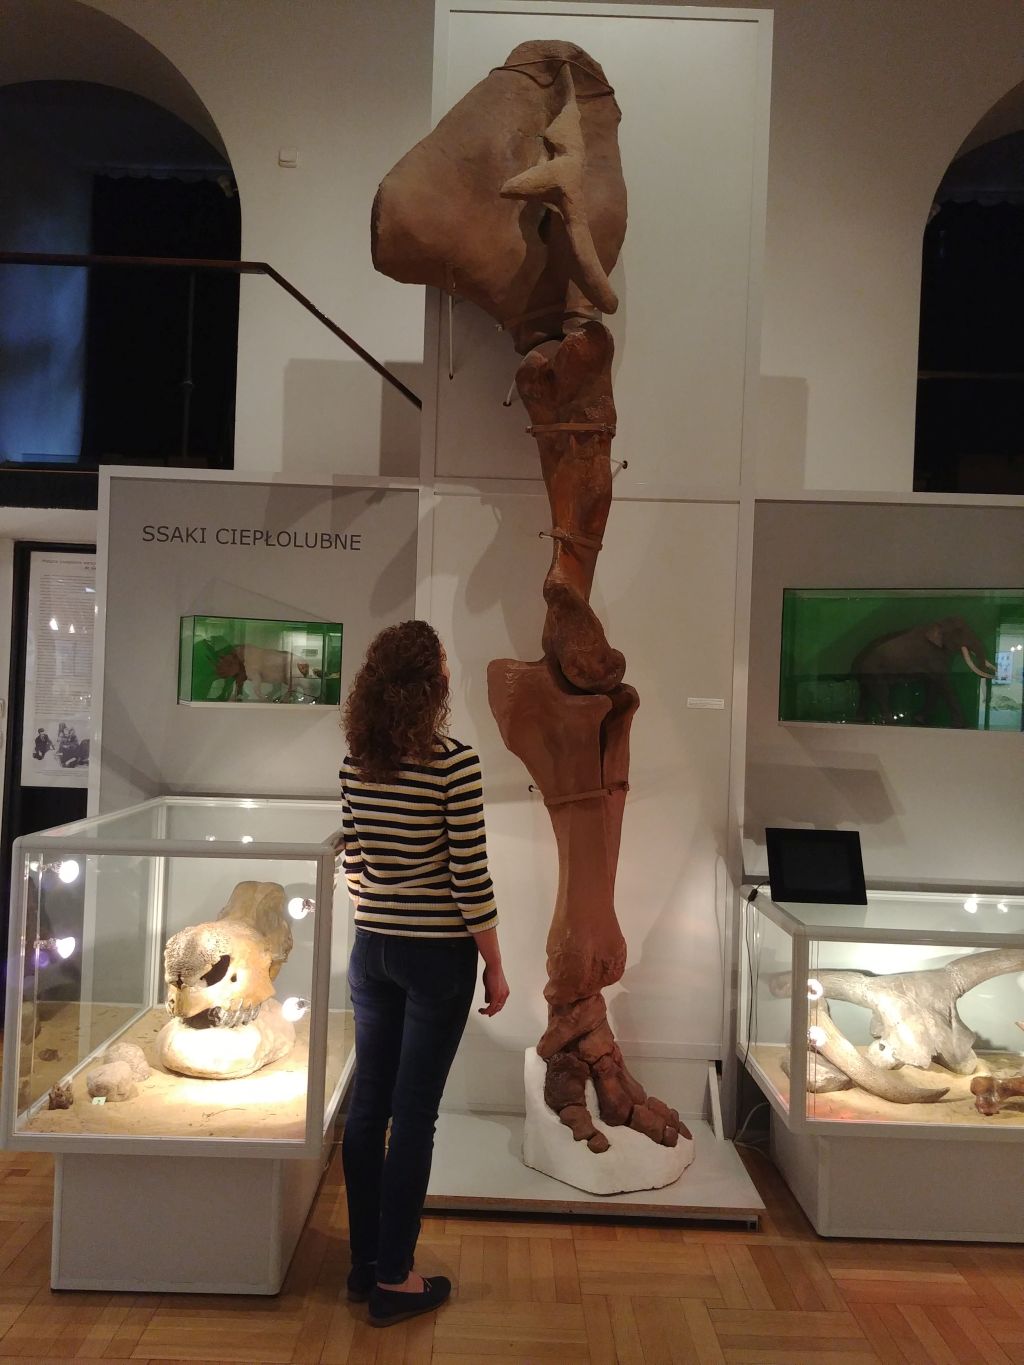 Przednia kończyna słonia leśnego eksponowana w Muzeum Ziemi; kobieta ogląda eksponat